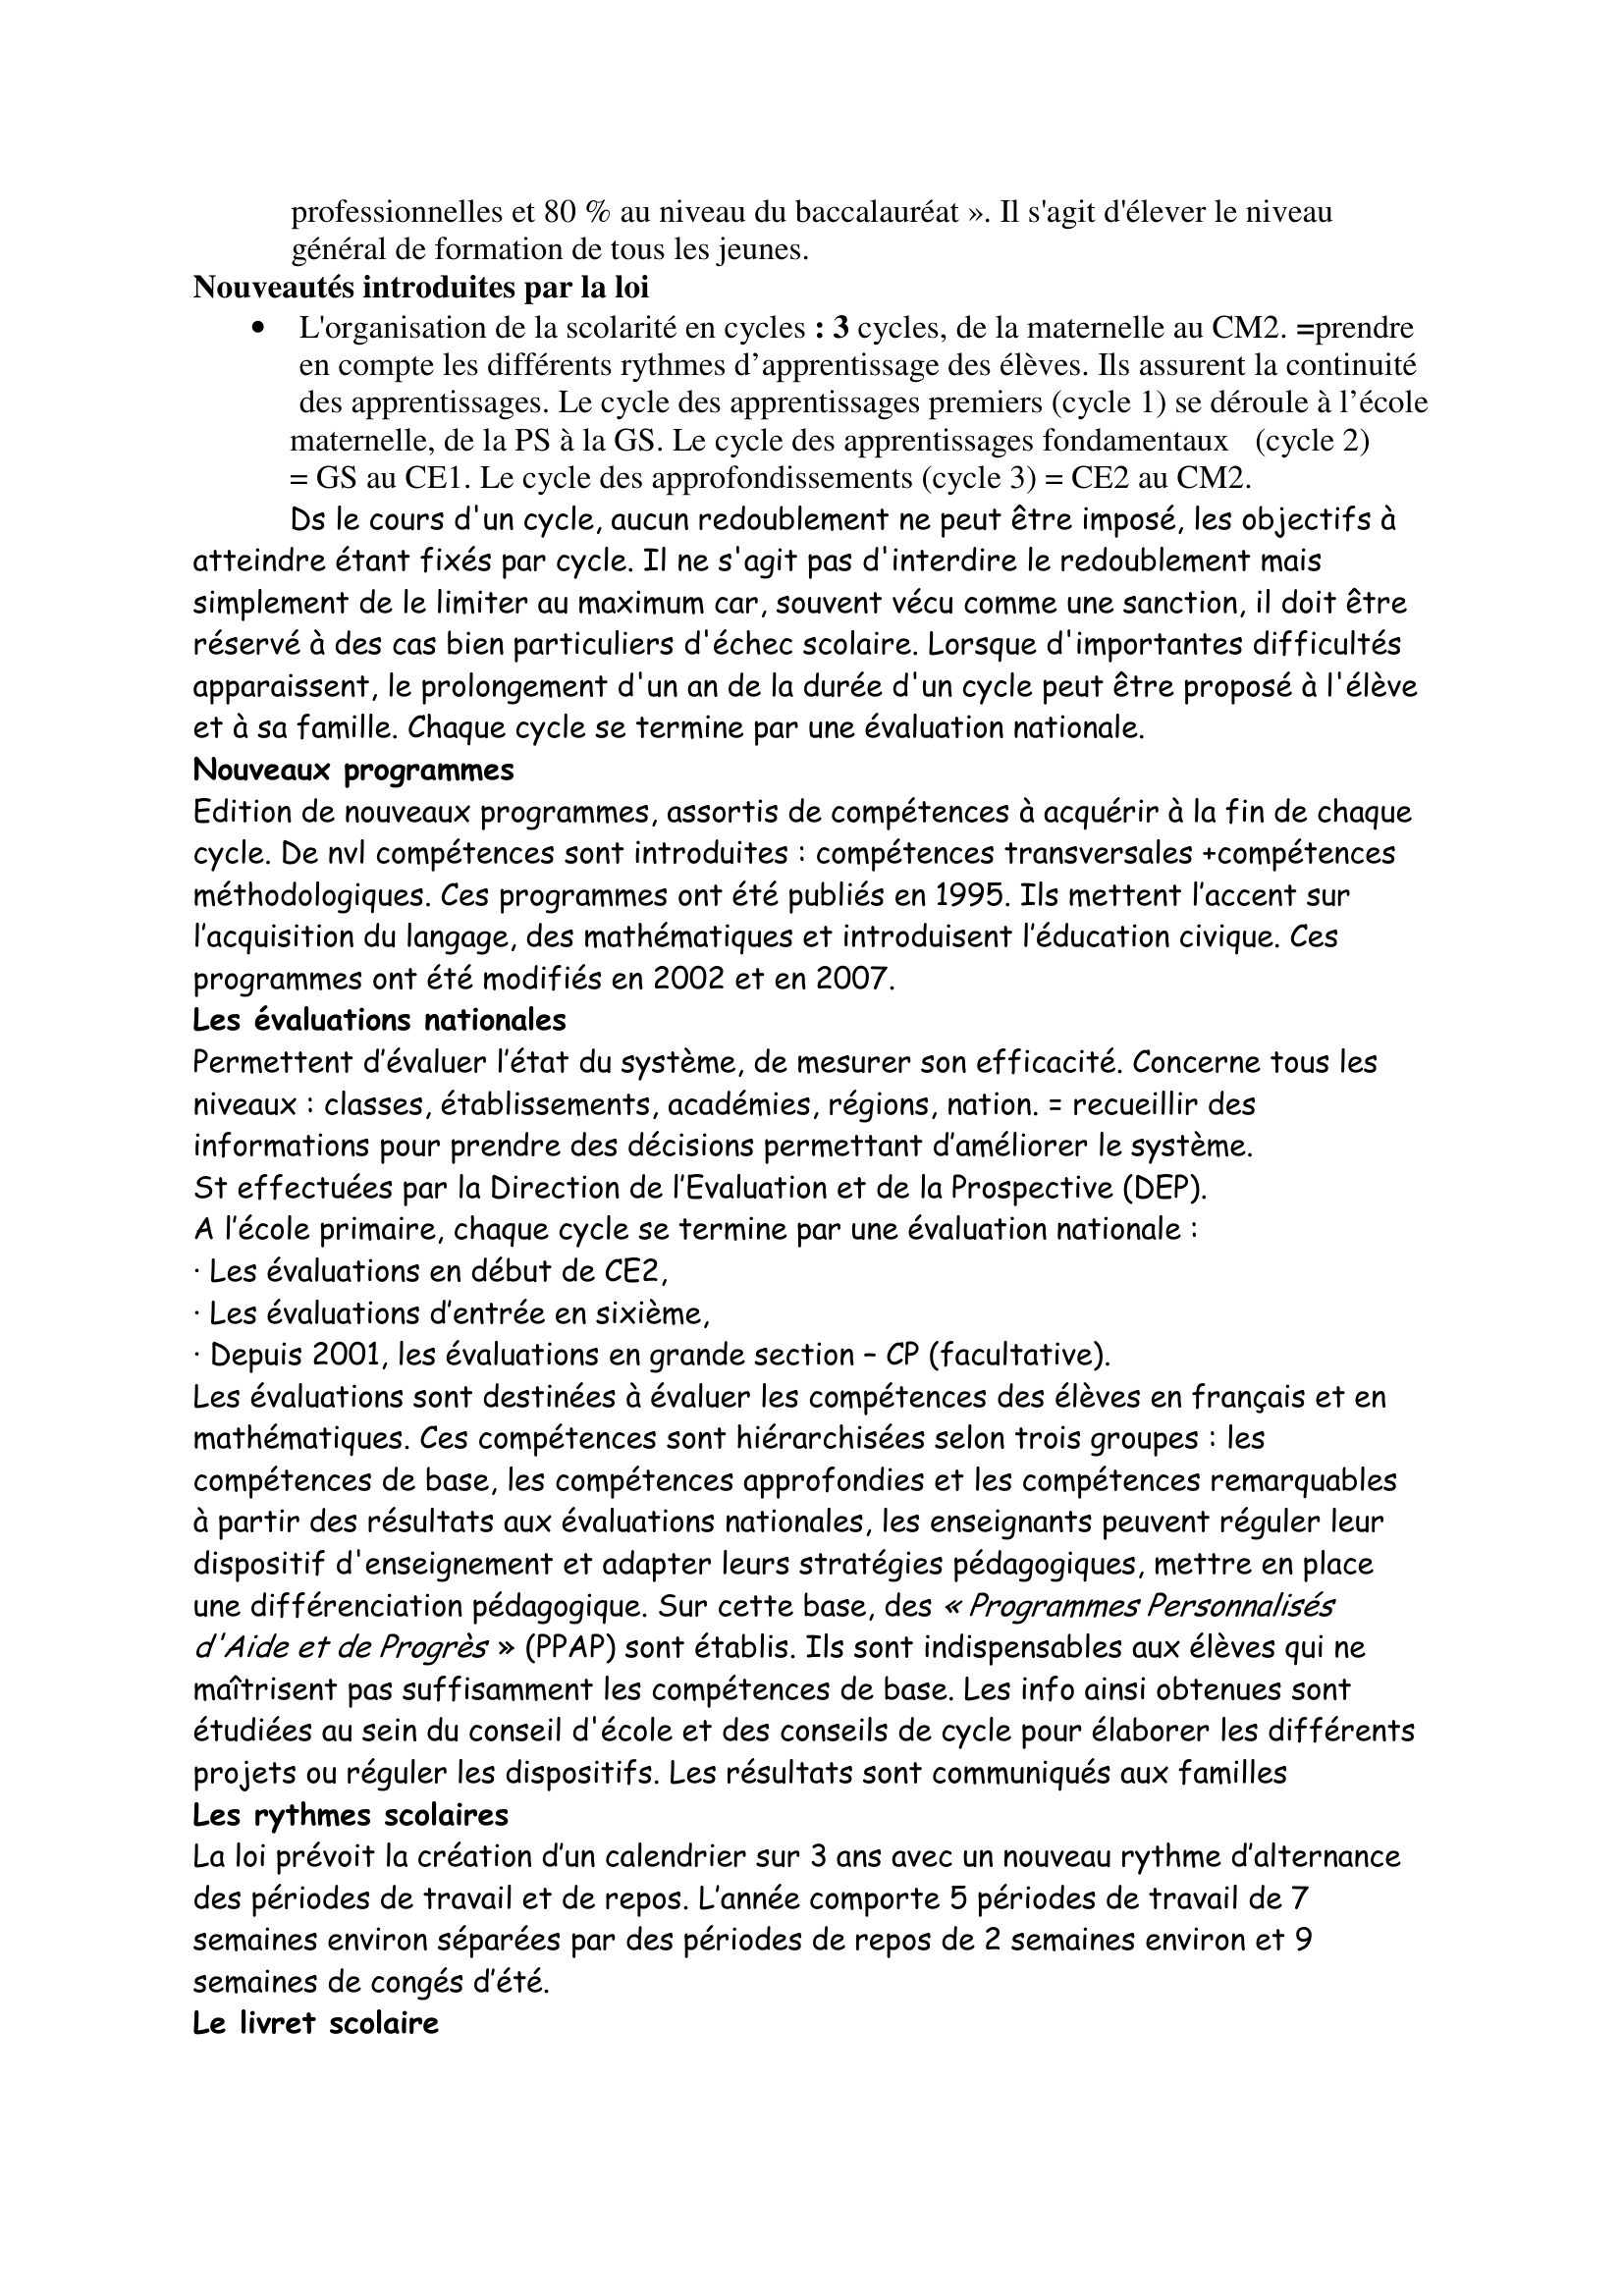 Prévisualisation du document LA LOI D'ORIENTATION DU 10 JUILLET 1989

Fiche synthèse construite par Sylvain
sylvain.